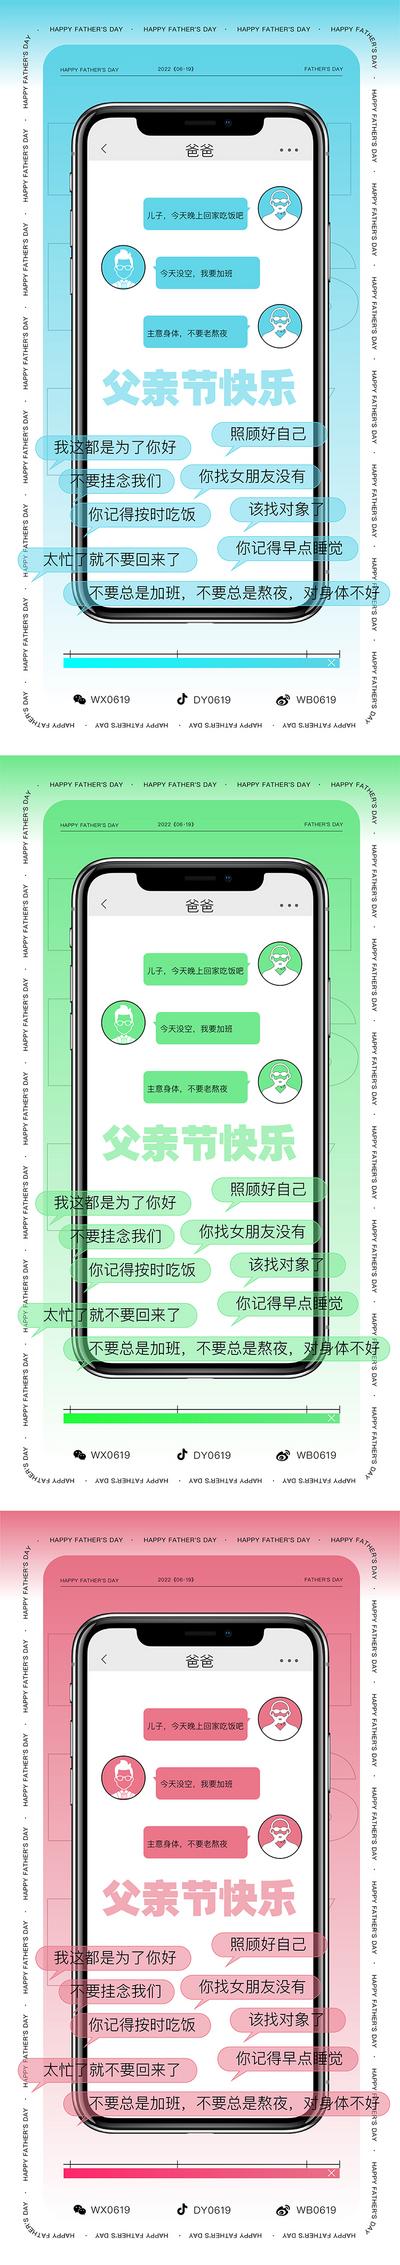 南门网 广告 海报 节日 父亲节 对话框 社交软件 沟通 界面 语录 聊天 手机 iphone 系列 创意